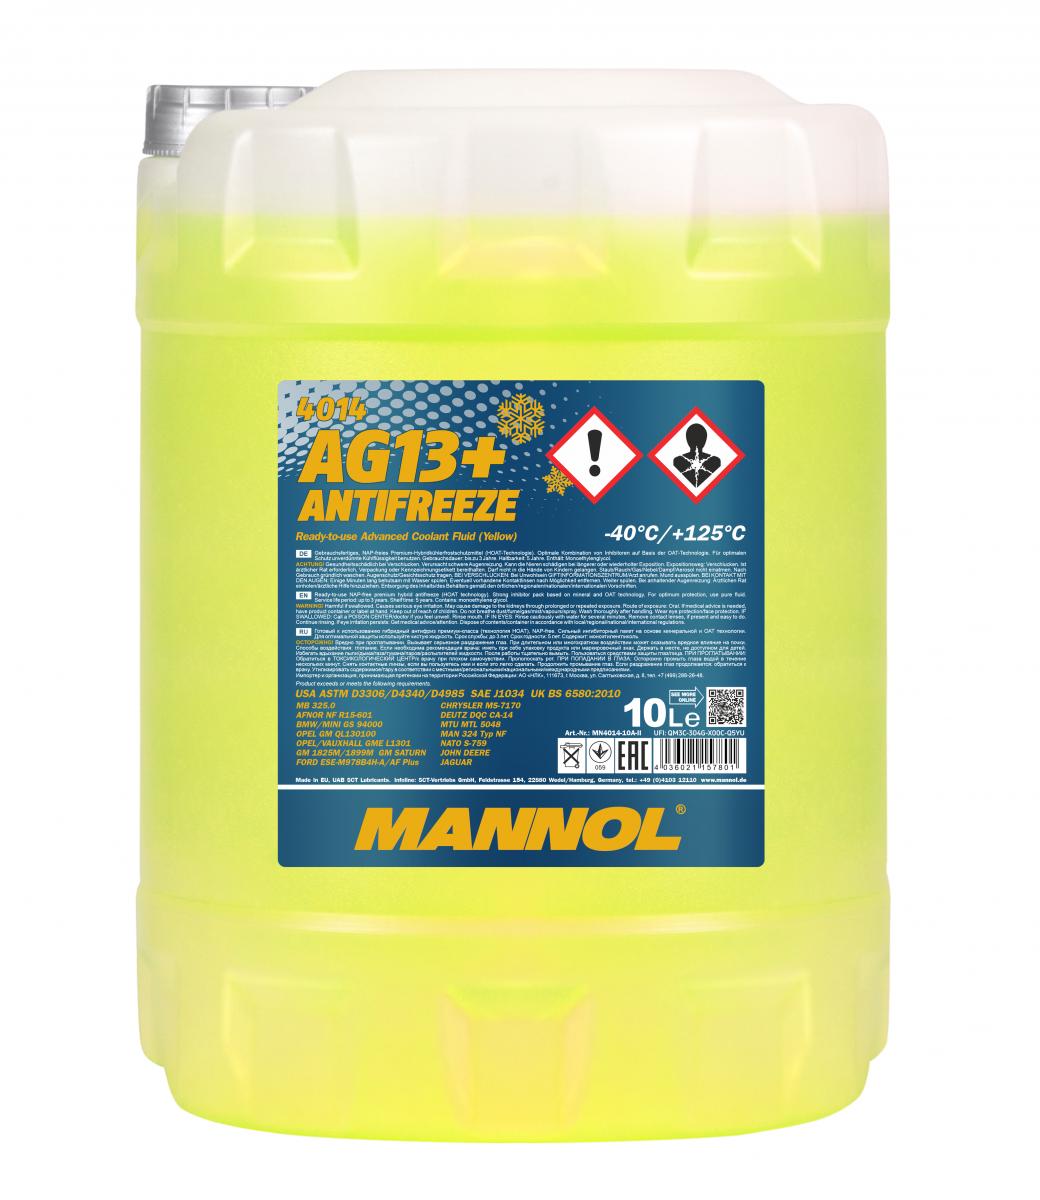 30 Liter (3x10) MANNOL AG13+ Kühlflüssigkeit Antifreeze Fertiggemisch -40°C gelb G13+